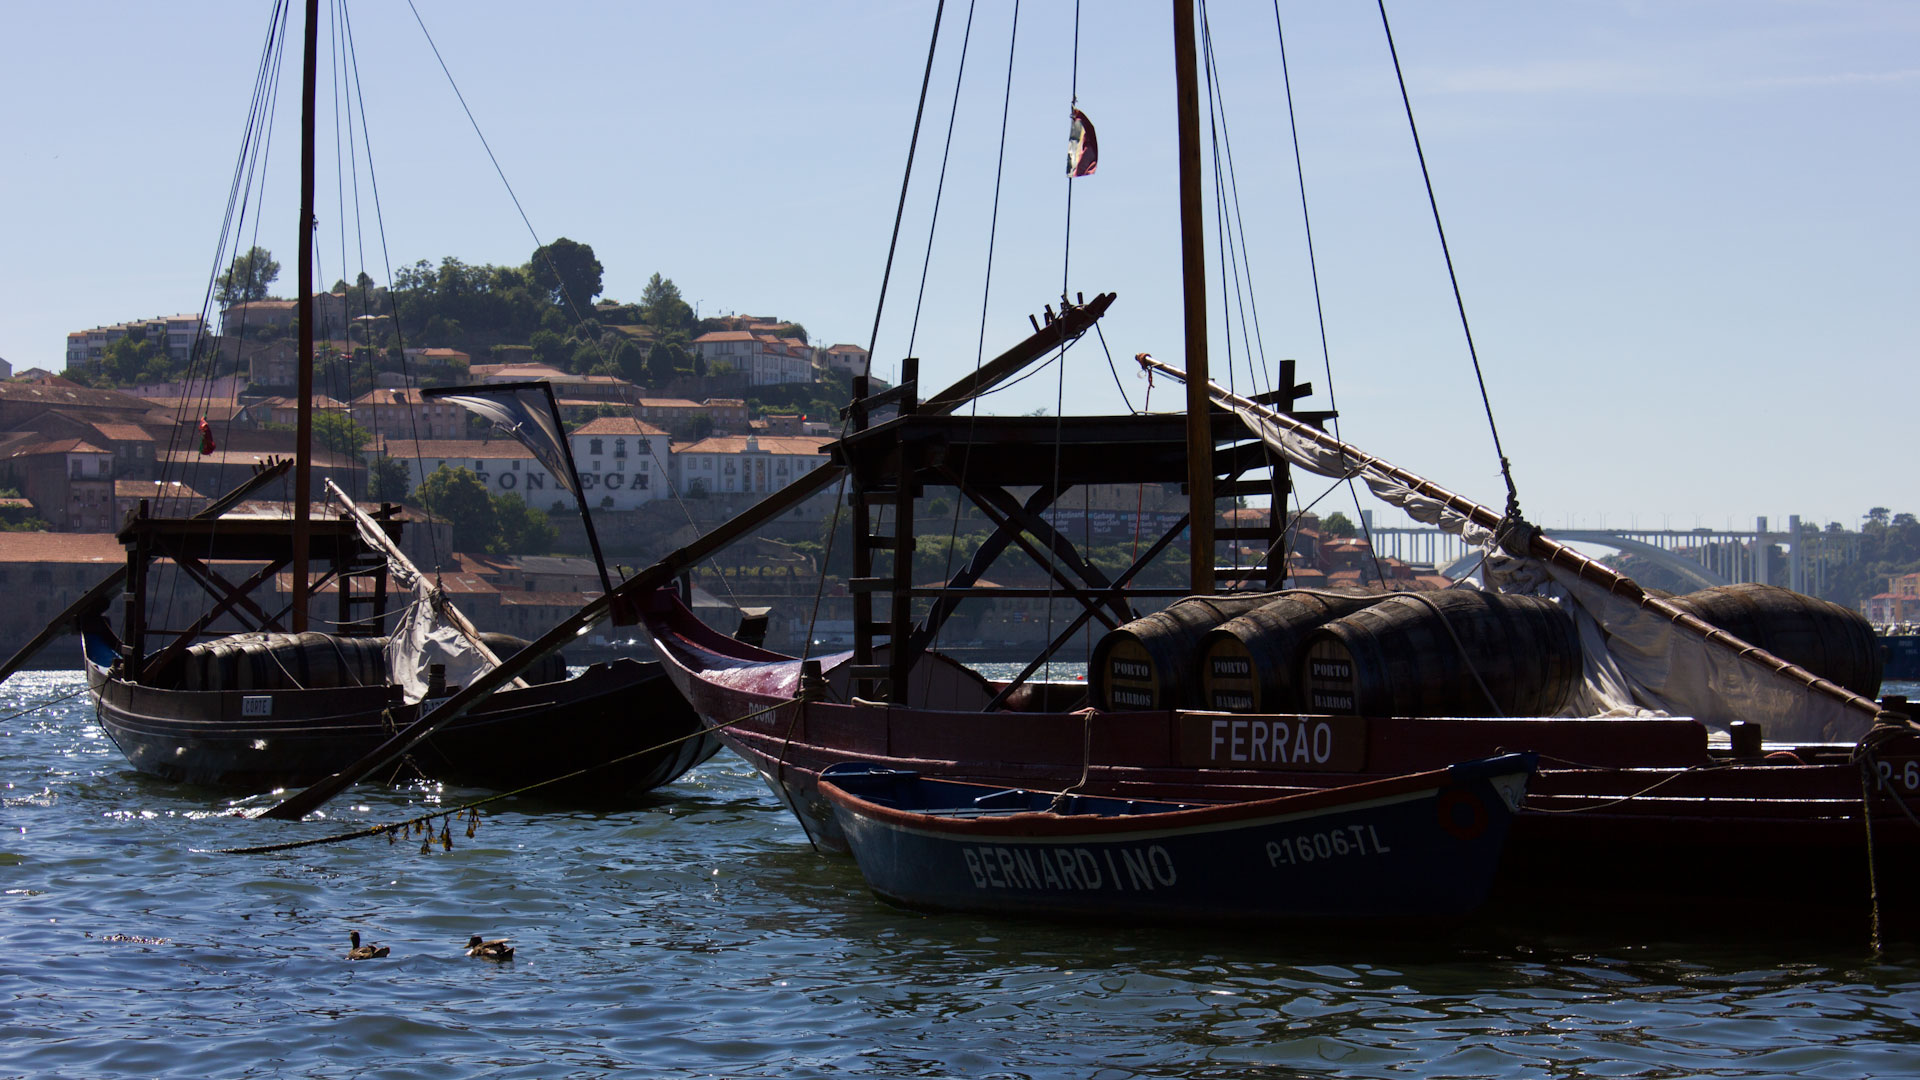 Rabelo boats in Porto